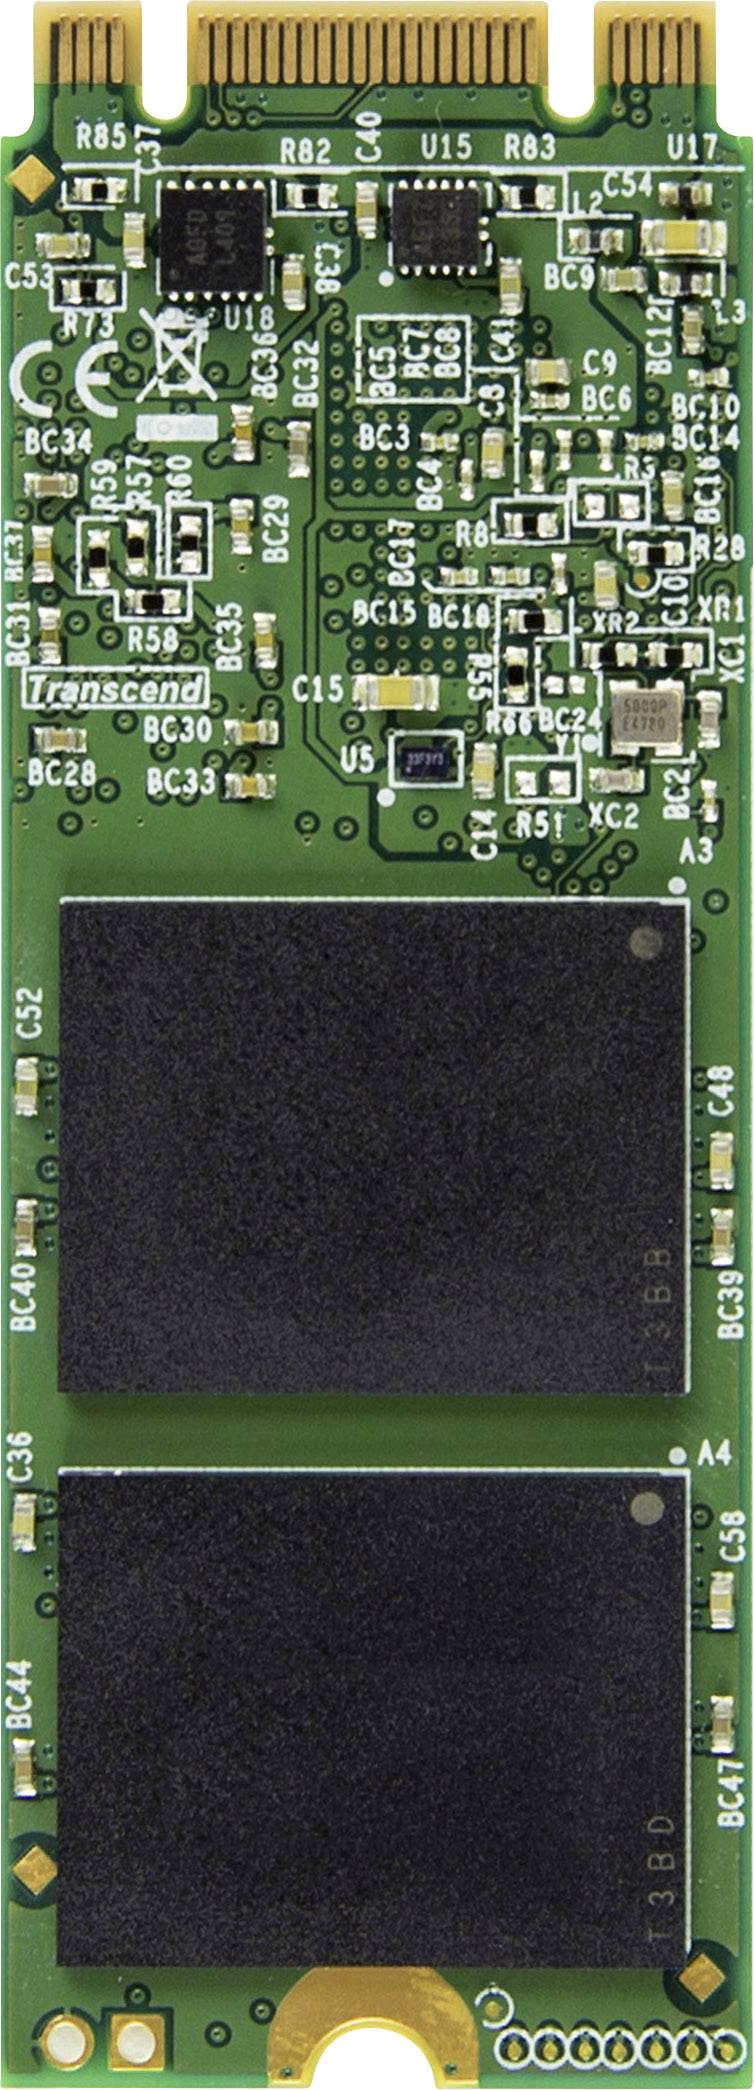 64GB TRANSCEND M.2 2260 SSD SATA3 MLC